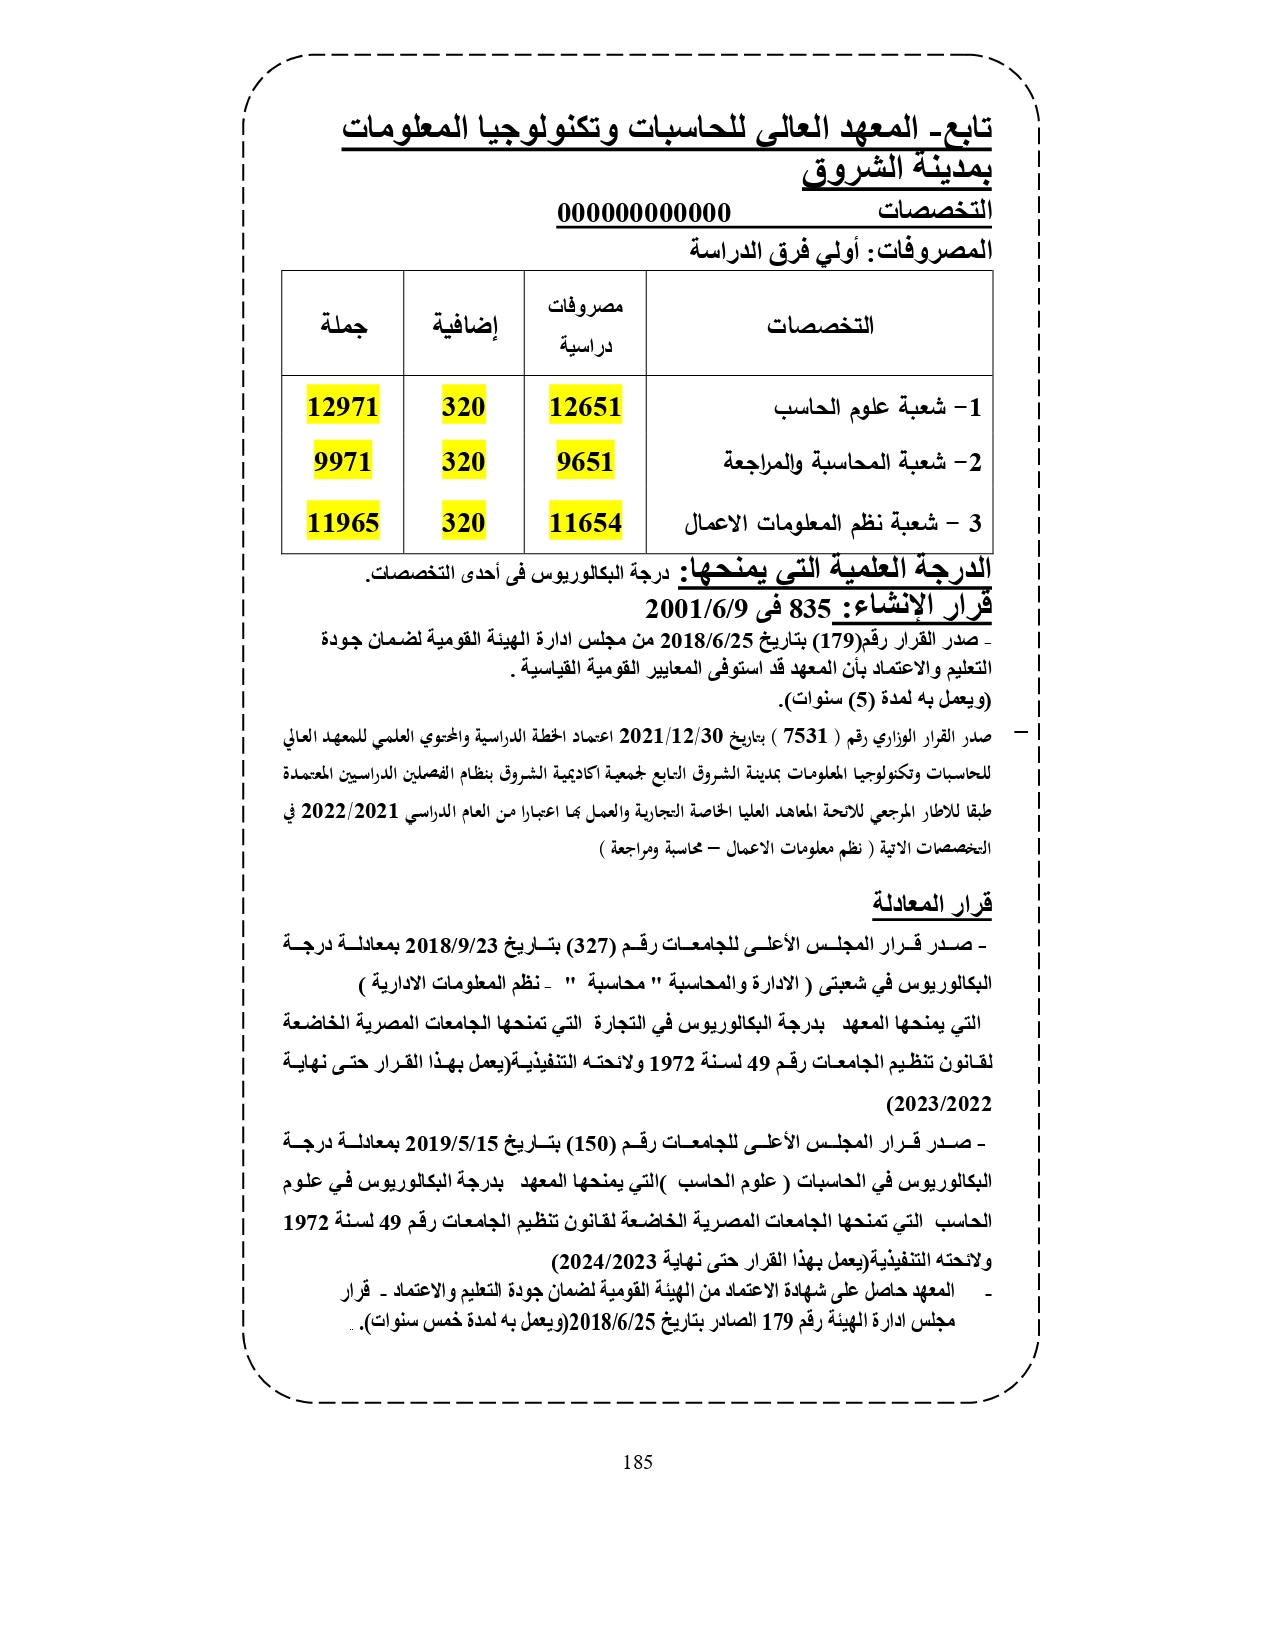 المعهد العالي للحاسبات وتكنولوجيا المعلومات بمدينة الشروق «مصروفات ومعلومات»